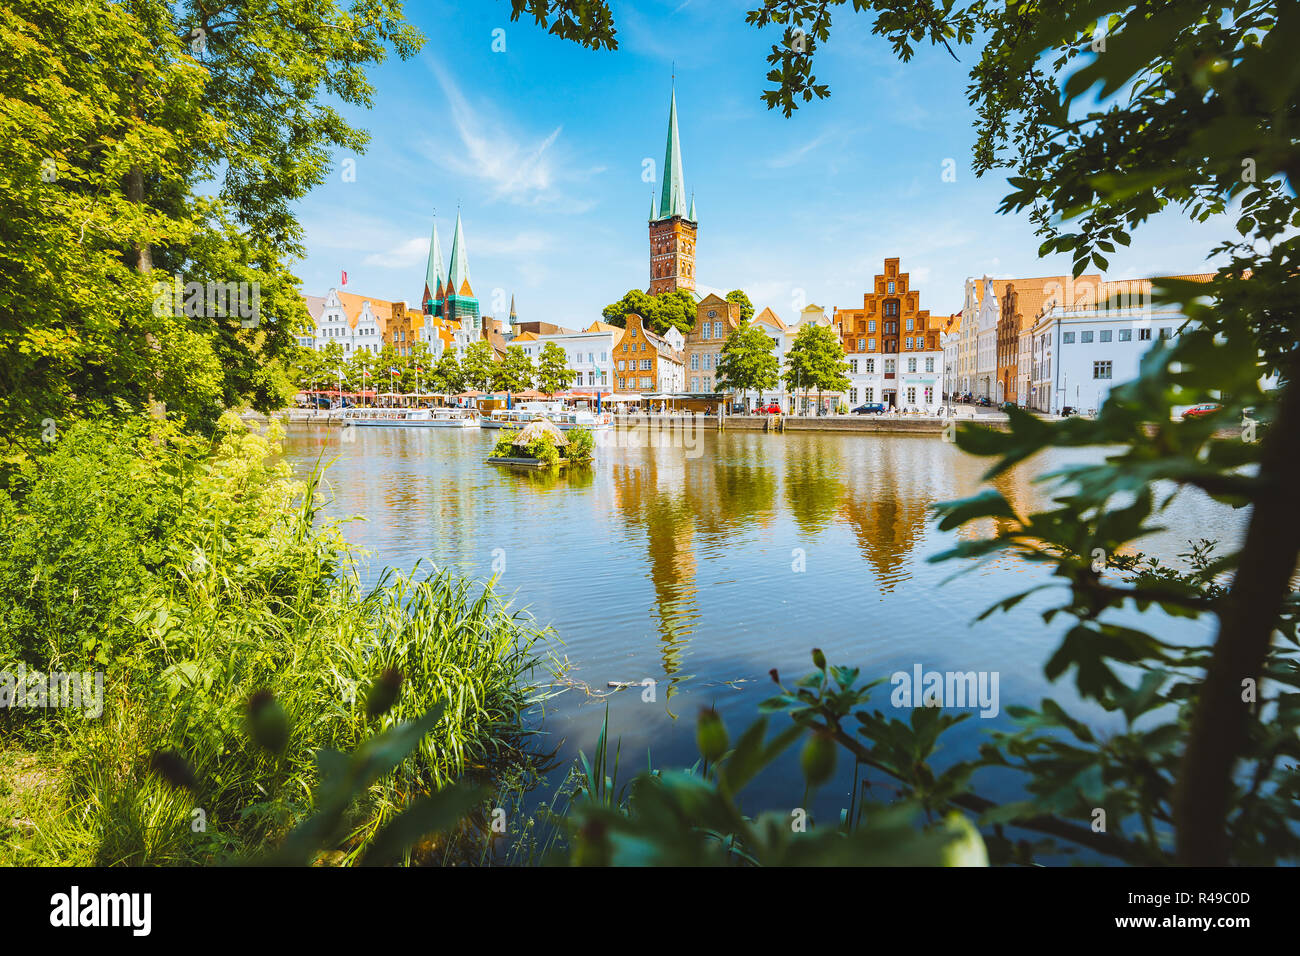 Classic vue panoramique de la ville historique de Lübeck avec célèbre rivière Trave en été, Schleswig-Holstein, Allemagne Banque D'Images